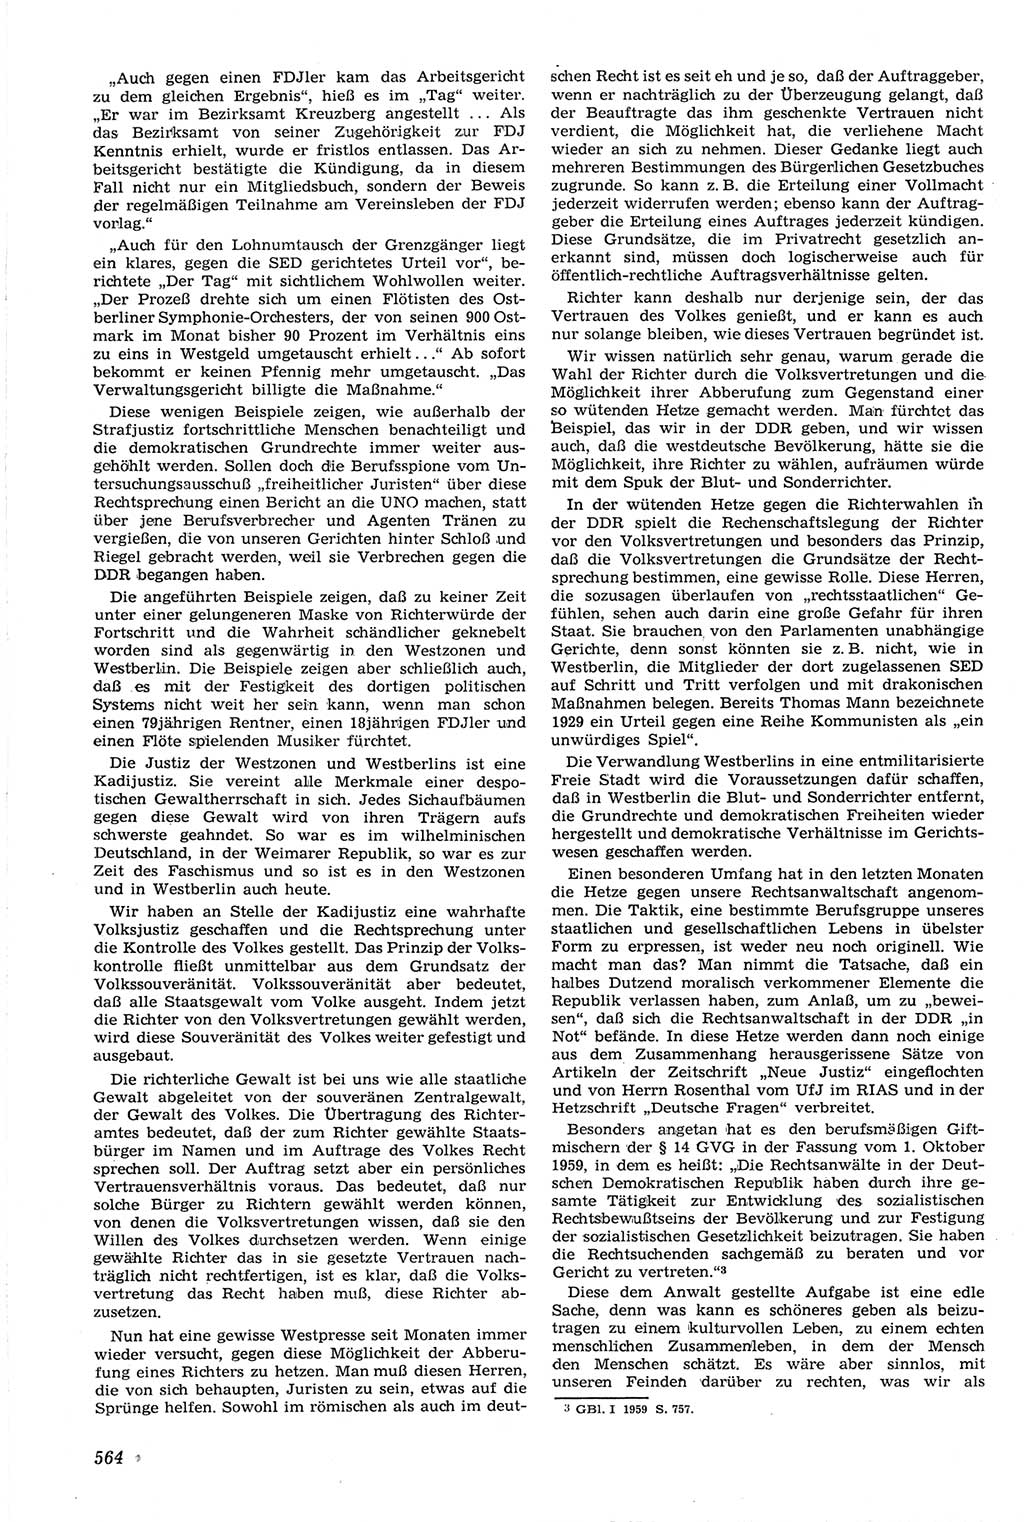 Neue Justiz (NJ), Zeitschrift für Recht und Rechtswissenschaft [Deutsche Demokratische Republik (DDR)], 14. Jahrgang 1960, Seite 564 (NJ DDR 1960, S. 564)